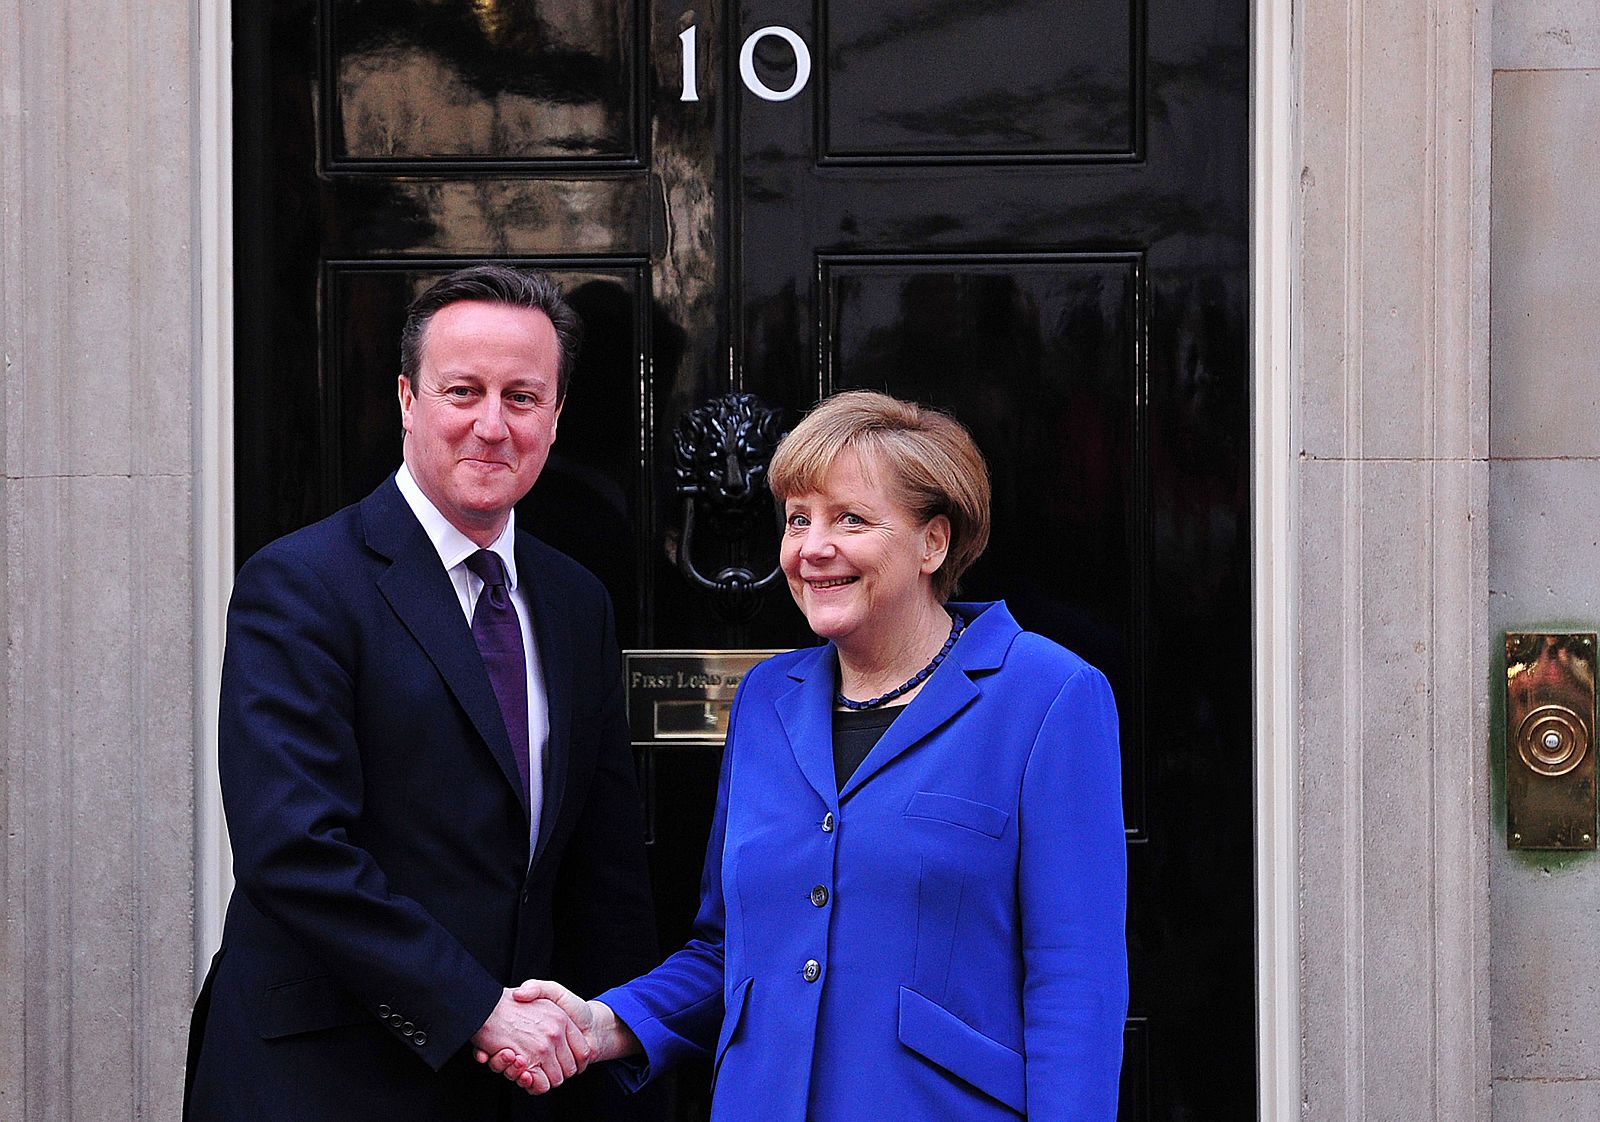 Fotografía de archivo de la reunión entre el primer ministro británico, David Cameron, y la canciller alemana, Angela Merkel, en febrero de 2014